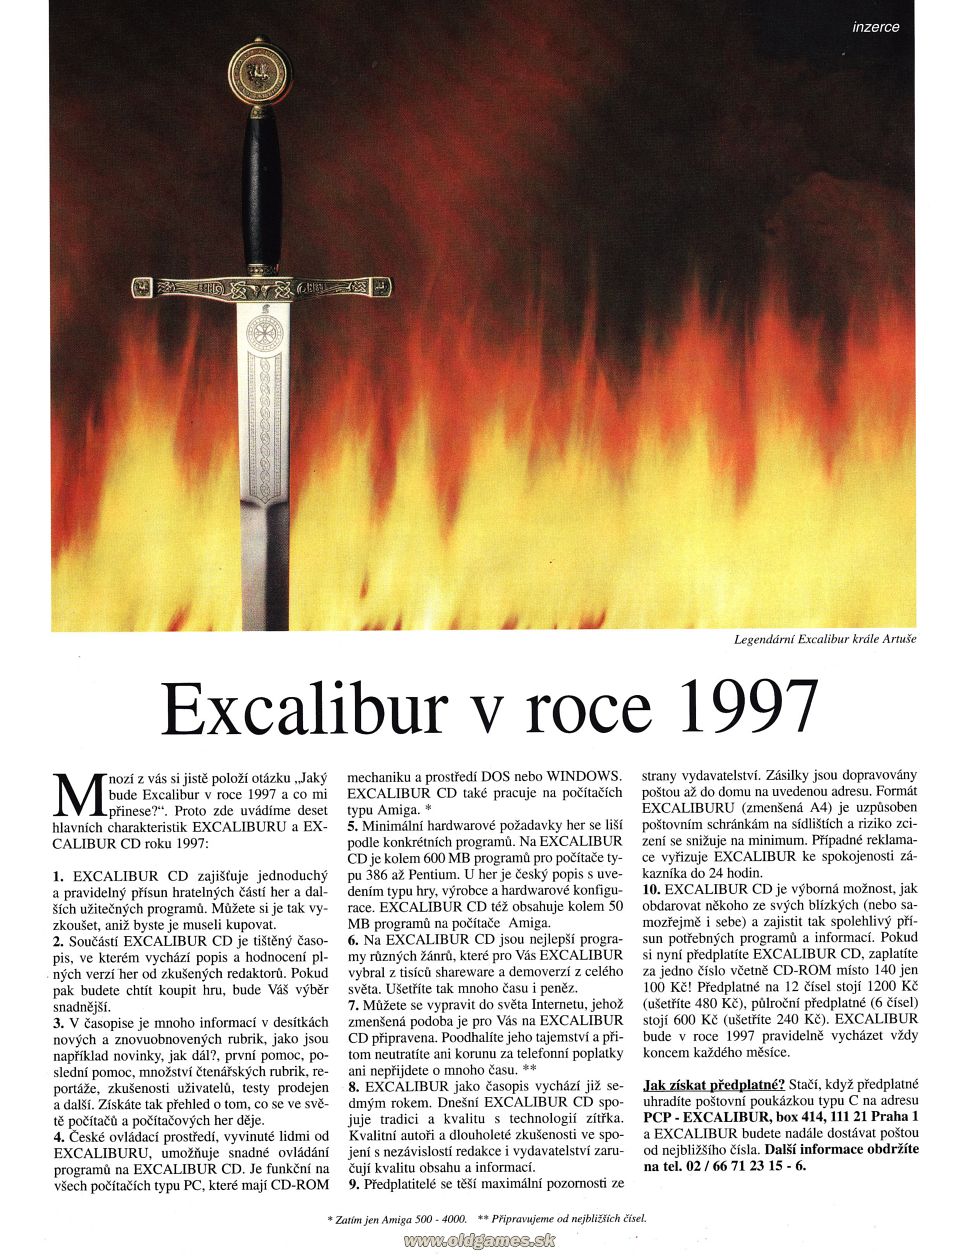 Excalibur v roce 1997